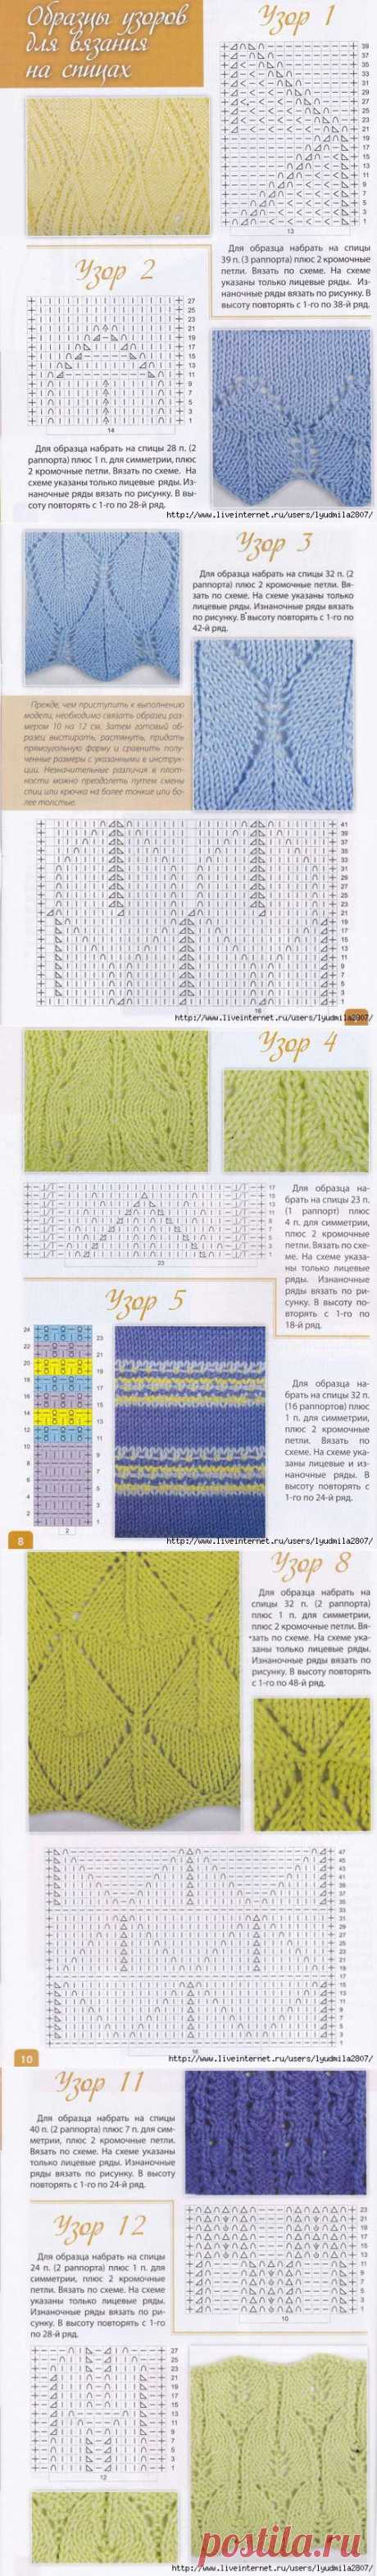 Образцы узоров для вязания на спицах (22 узора). Секреты мастерства 1-2014